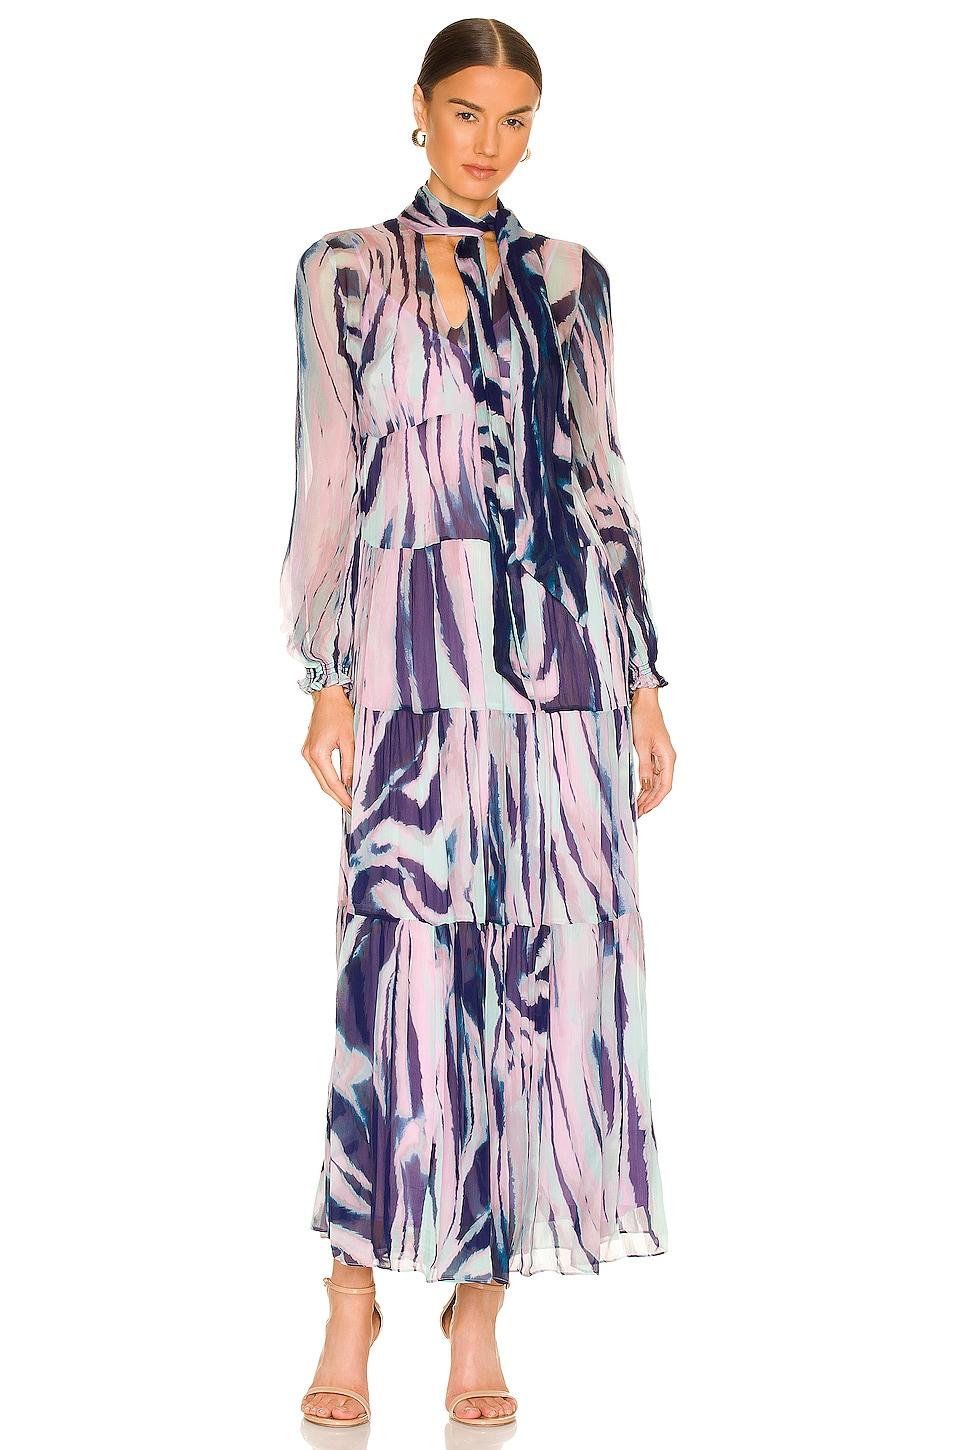 Diane von Furstenberg Chiffon jurk room-blauw abstract patroon elegant Mode Jurken Chiffon jurken 